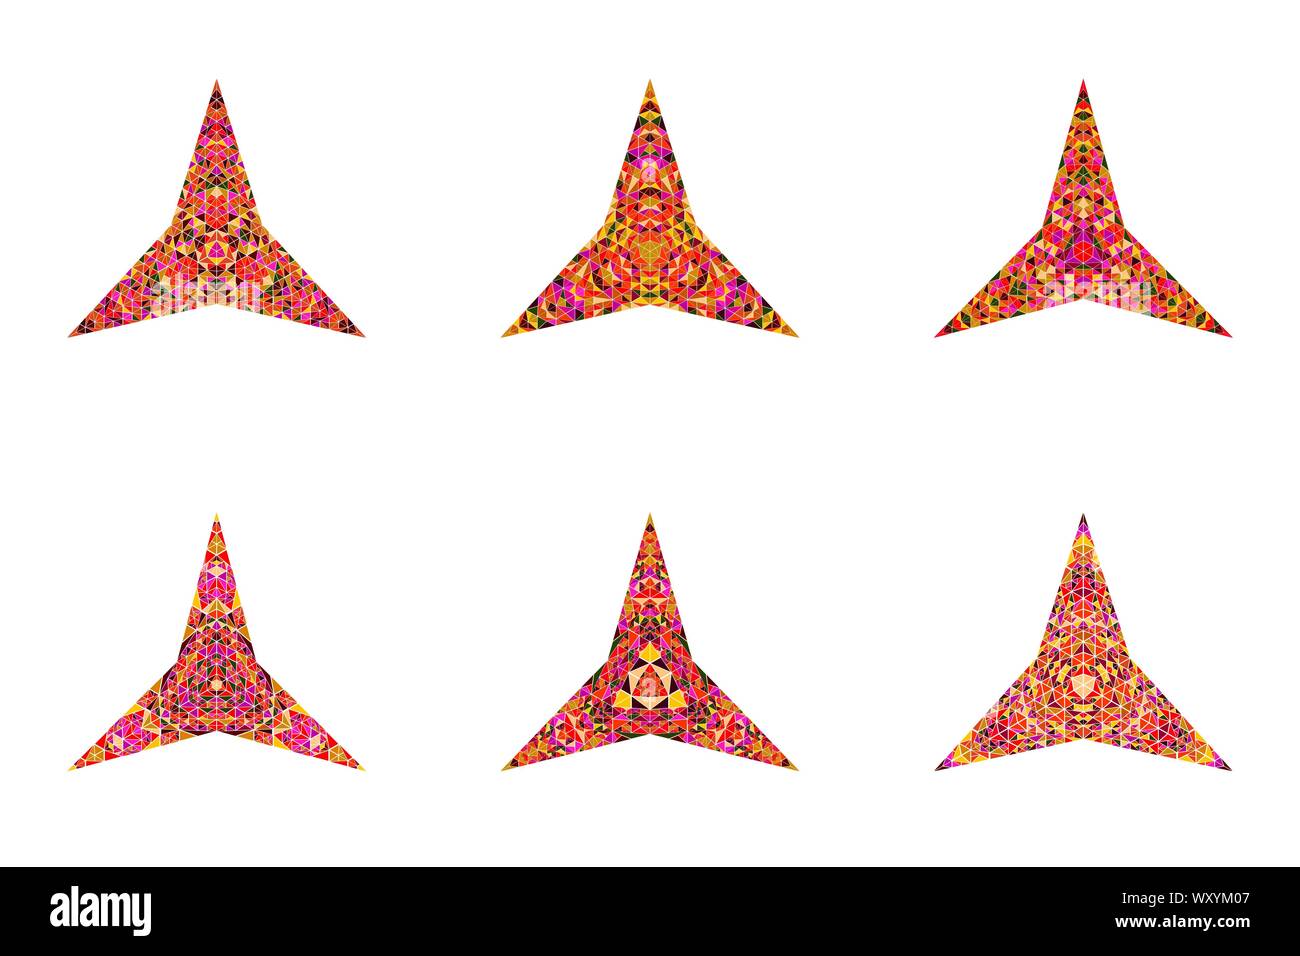 Isolierte abstrakte Mosaik ornament Star polygon Sammlung - Dekorative geometrische vieleckige geometrischer Vektor Designs elementss Stock Vektor